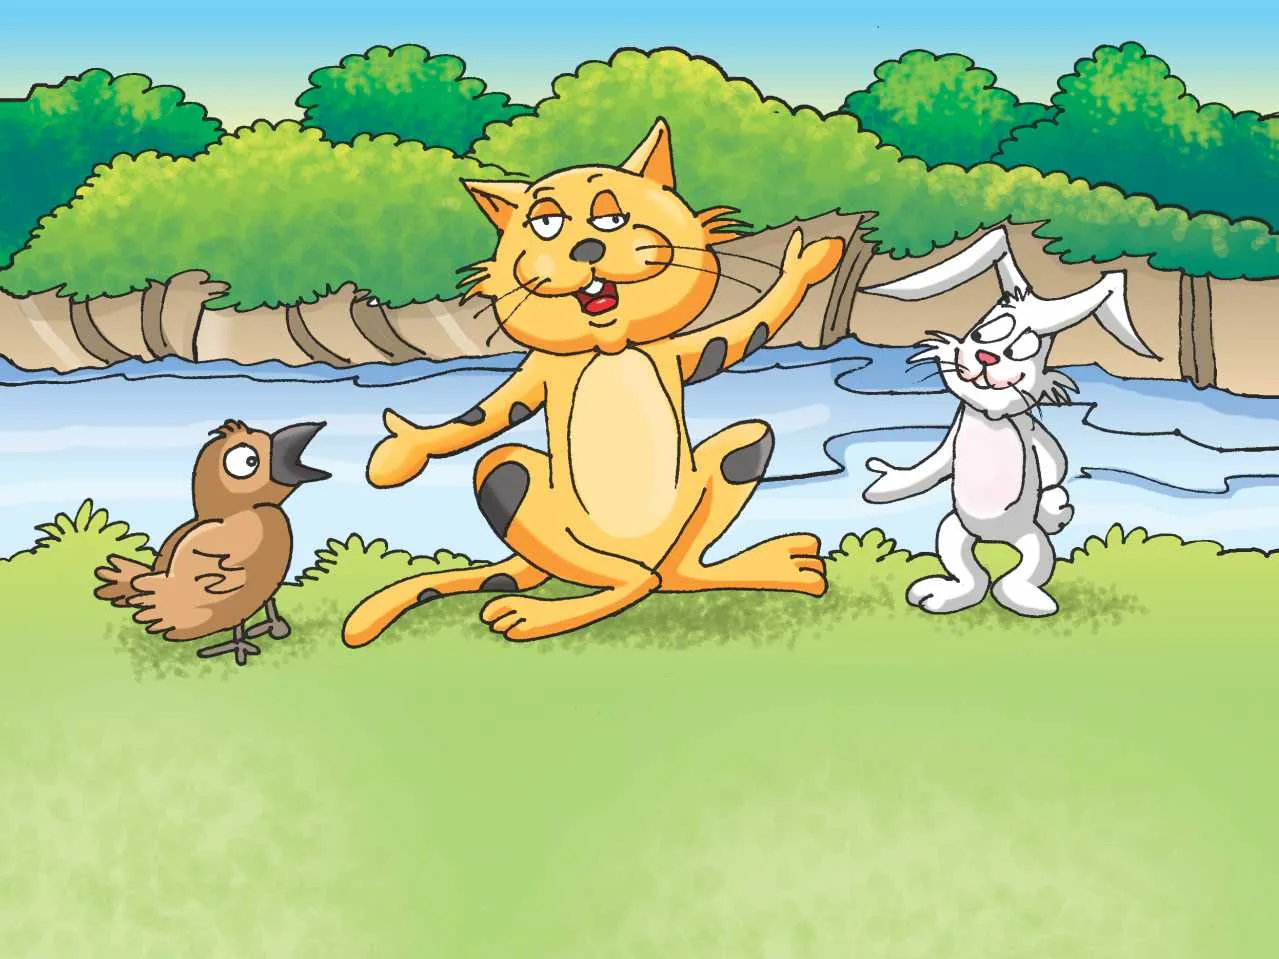 Cat, rabbit and bird cartoon image